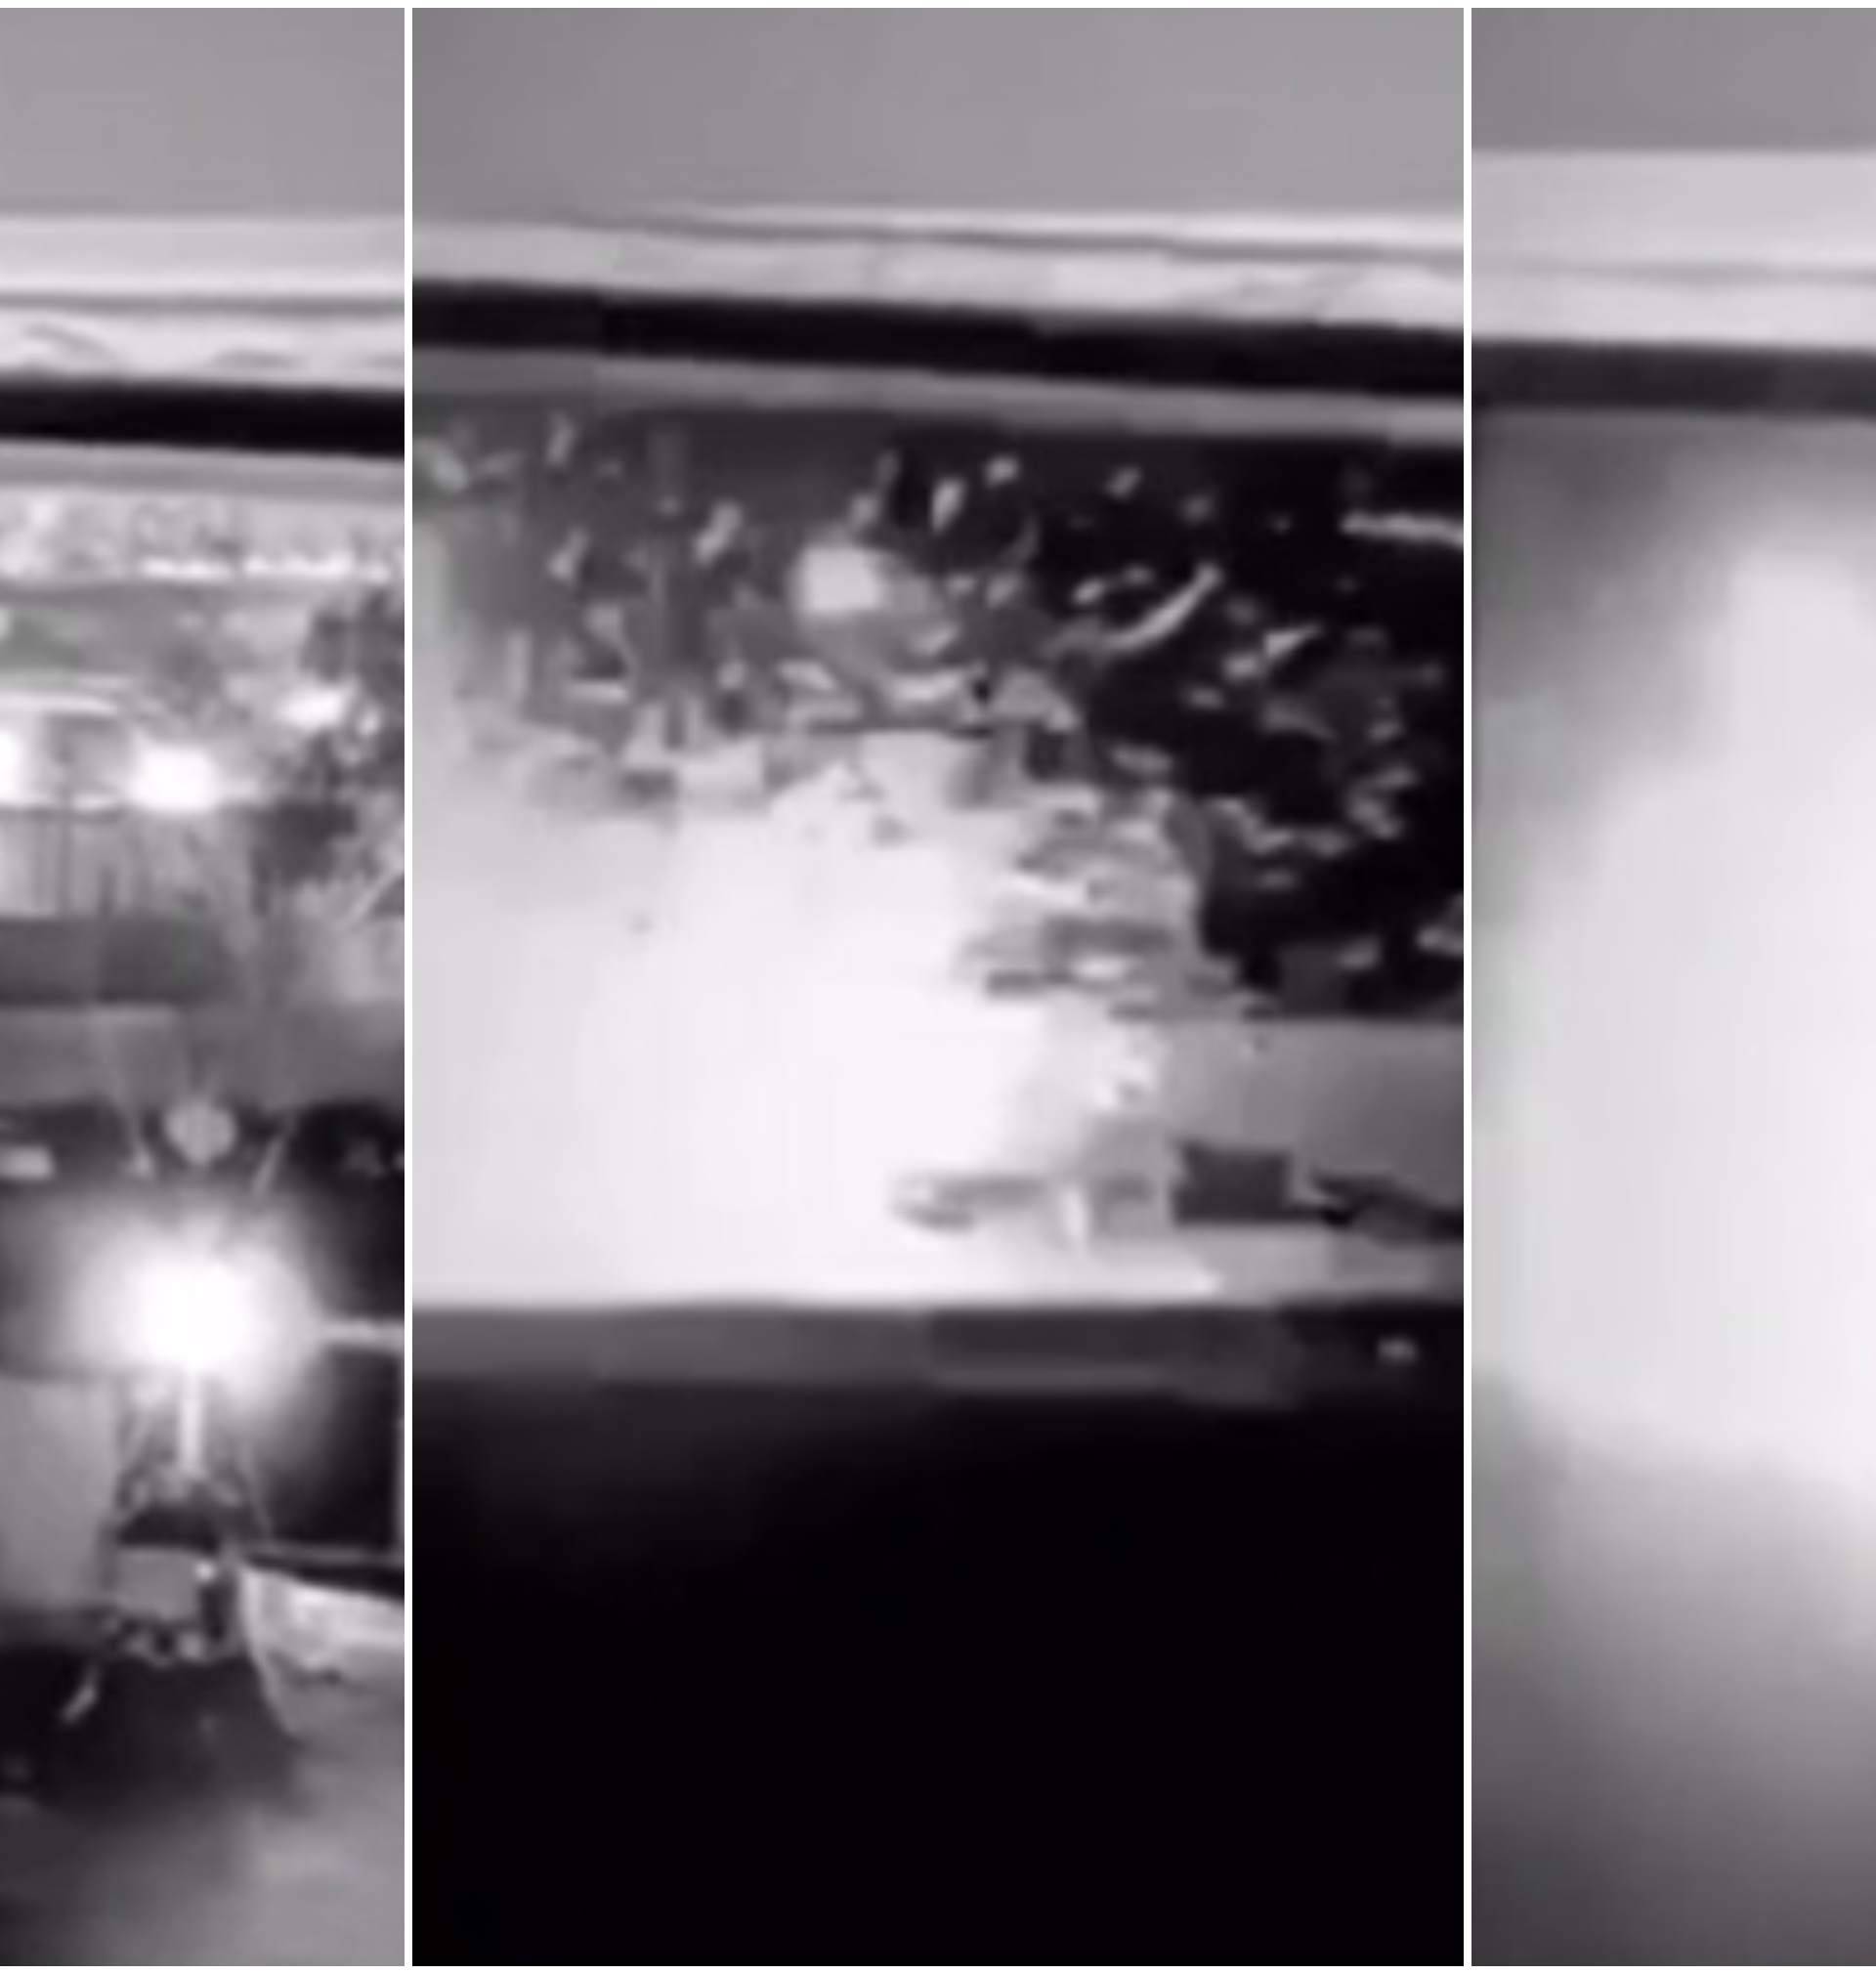 Objavljena je snimka napada: Vozilo su raznijeli u sekundi!